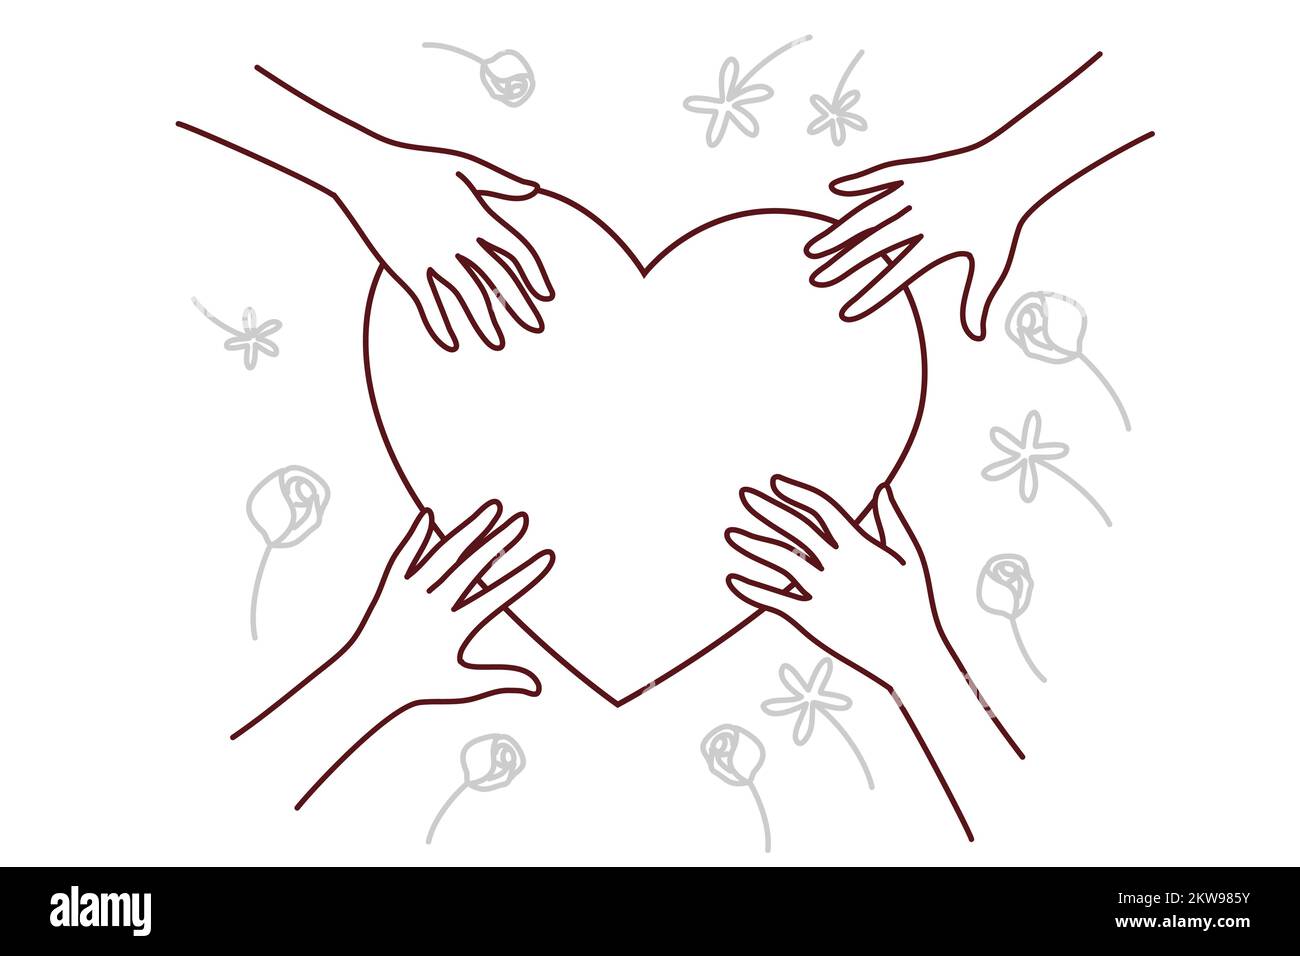 Nahaufnahme der Hände in der Nähe von Herzzeichen teilen Liebe und Fürsorge. Verschiedene Menschen, die das Herz berühren, zeigen Zuneigung und Dankbarkeit. Vektorgrafik. Stock Vektor